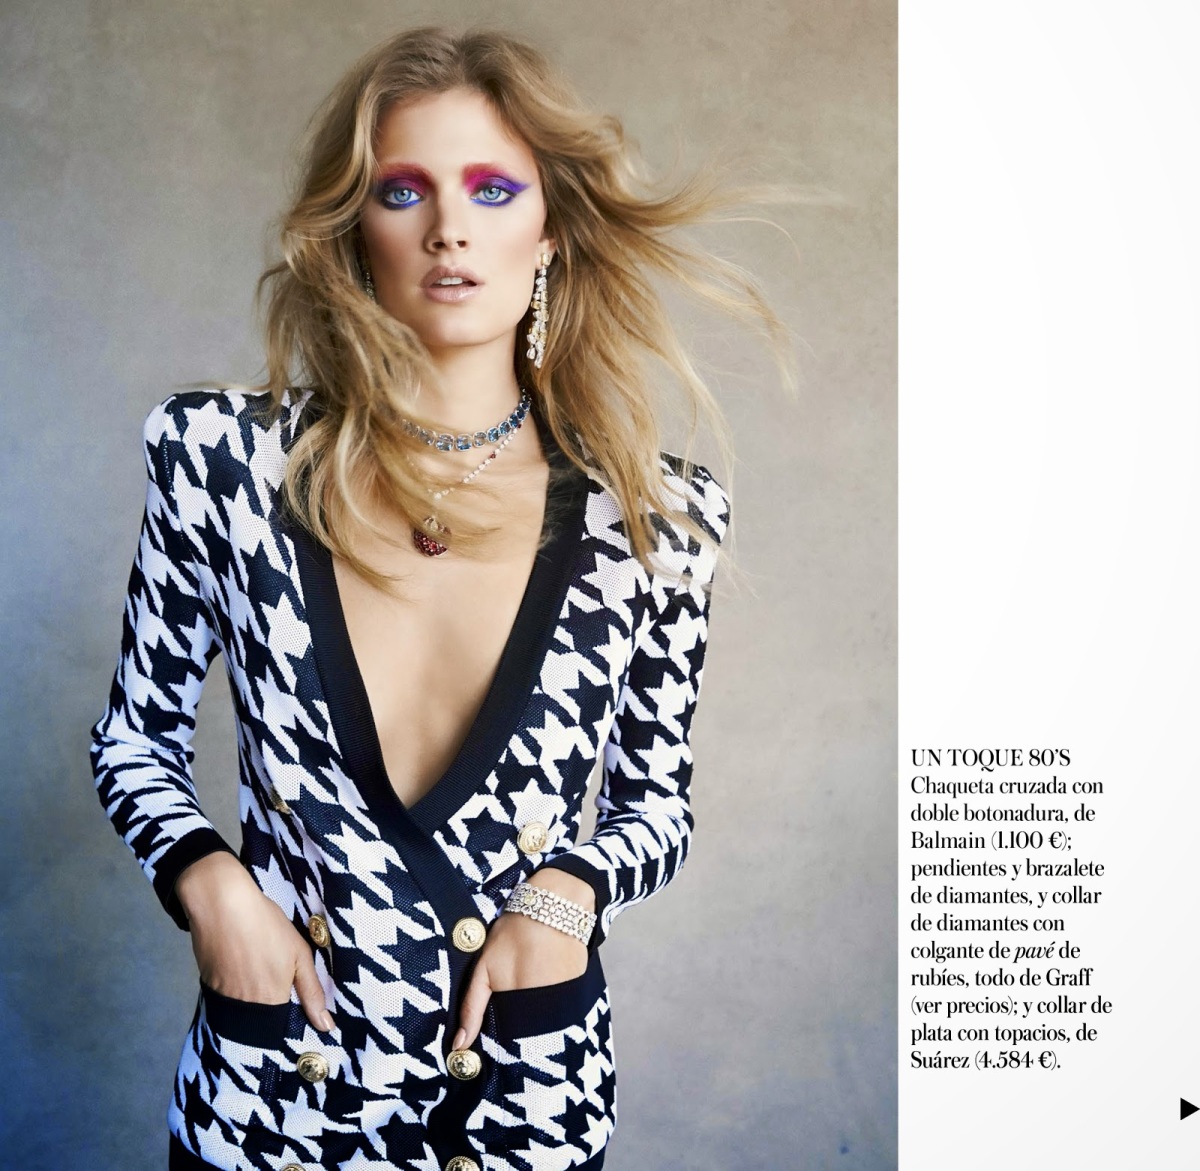 Constance Jablonski for Vogue Spain July 2014 